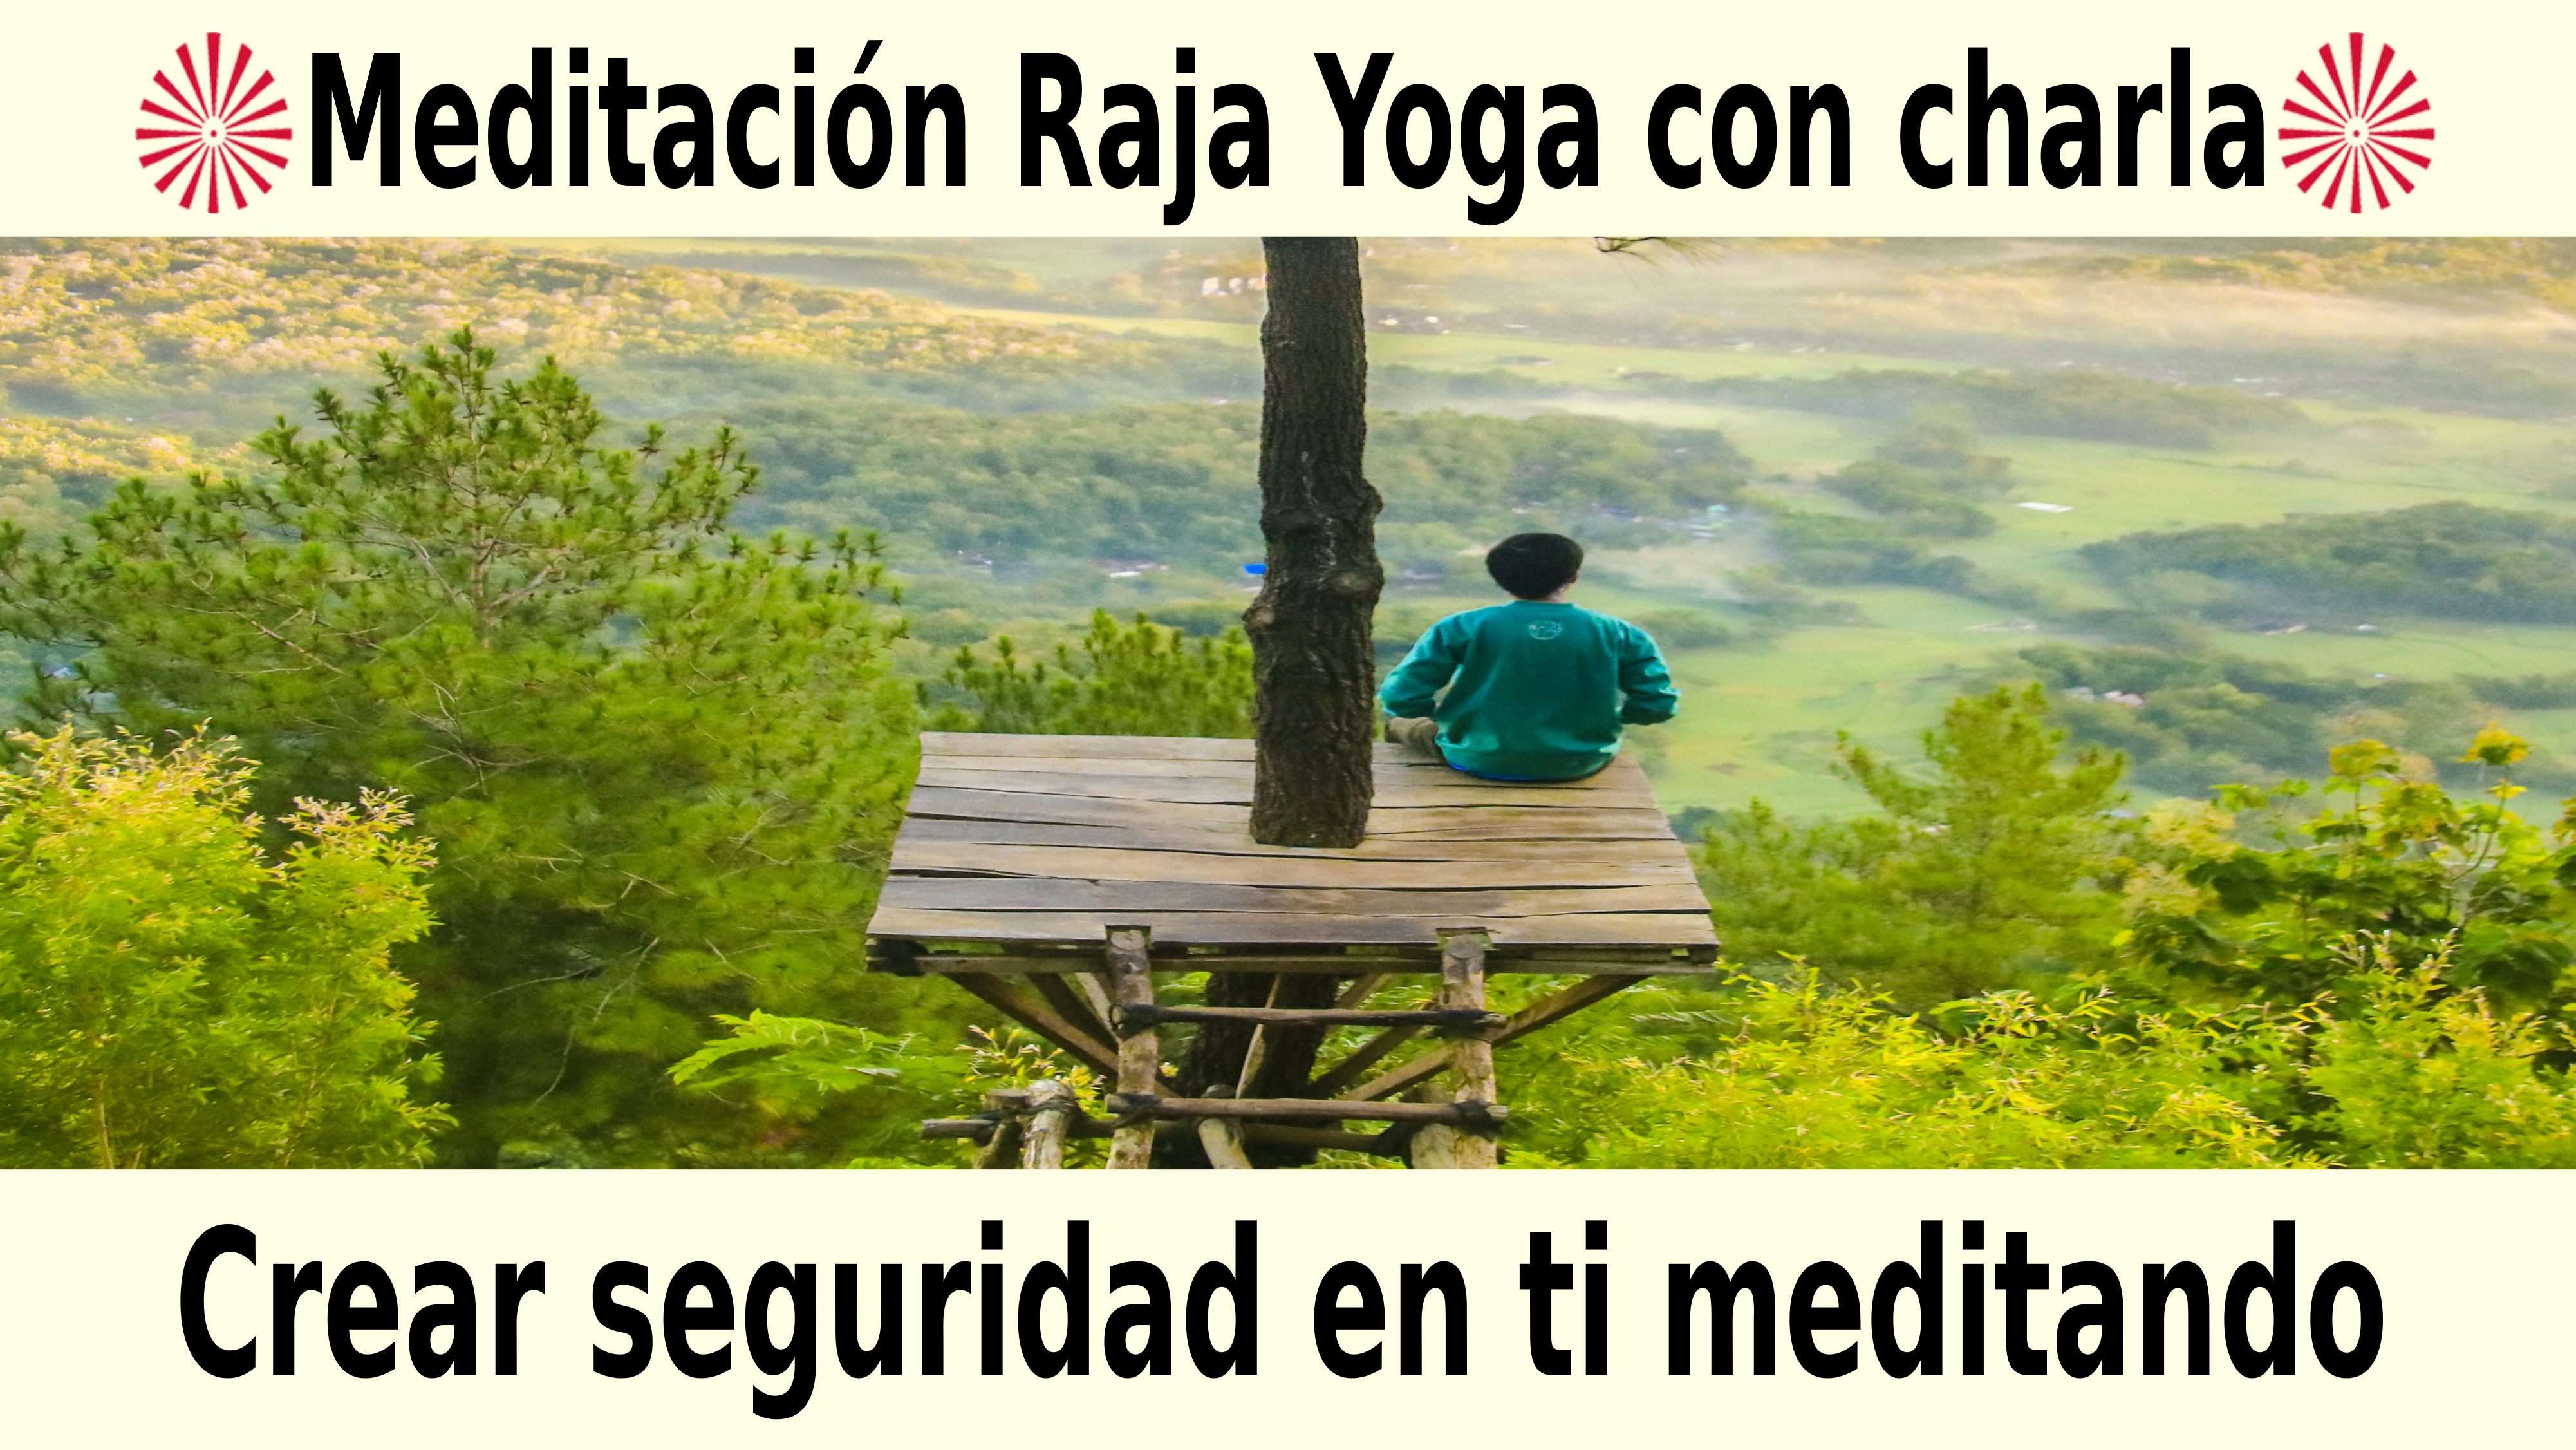 Meditación Raja Yoga con charla: Crear seguridad en ti meditando (11 Noviembre 2020) On-line desde Sevilla